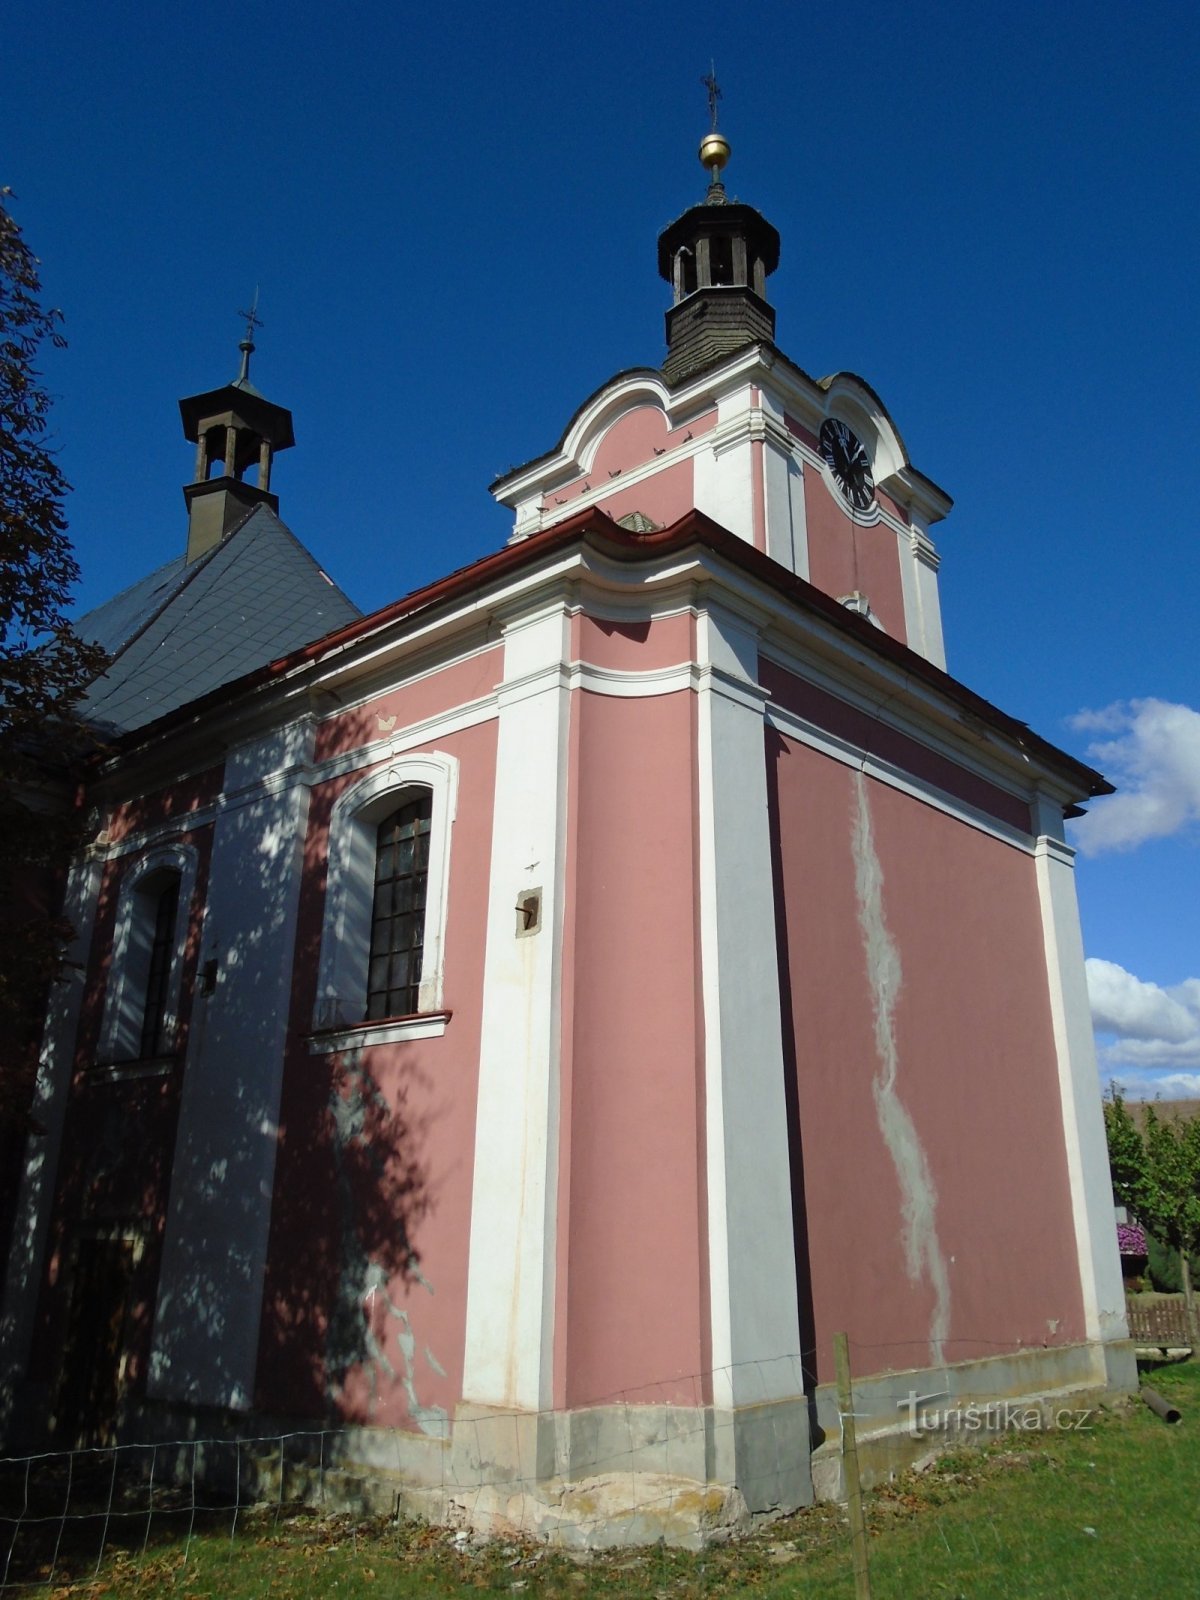 Ναός Κοιμήσεως της Θεοτόκου (Petrovice)